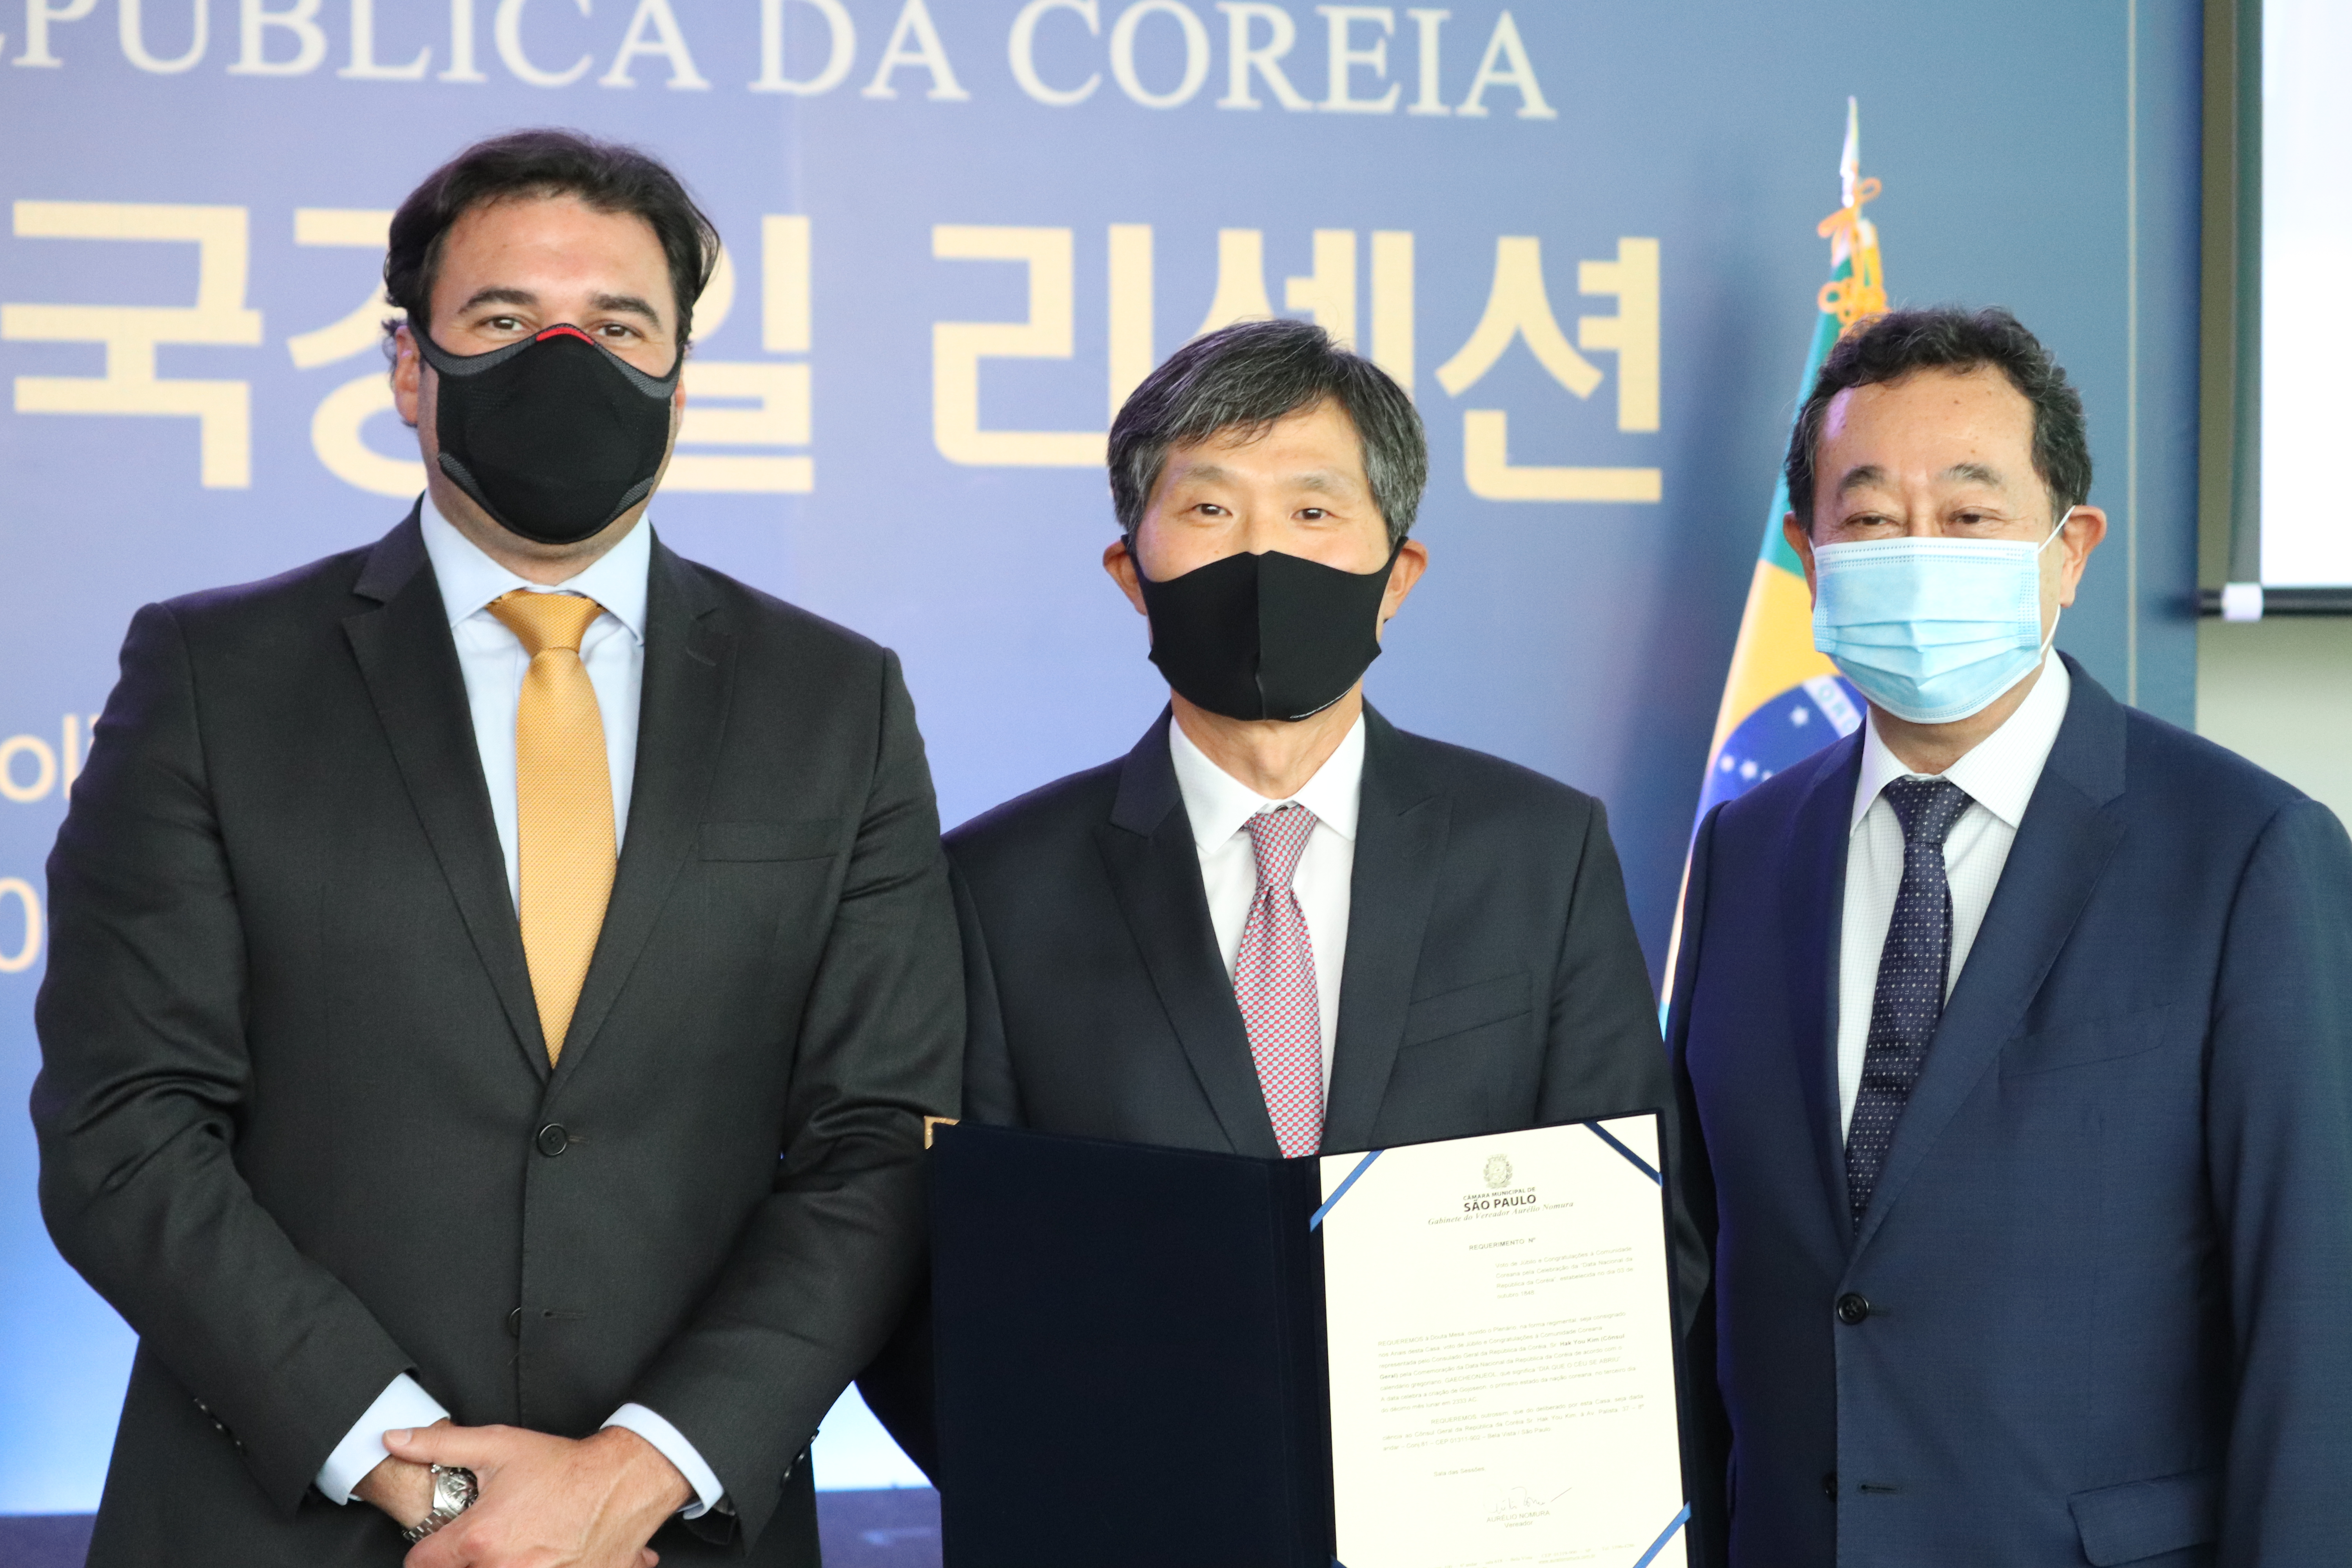 Foto do Secretário Luiz Alvaro junto com autoridades coreanas no evento de comemoração da Data Nacional da Coreia.